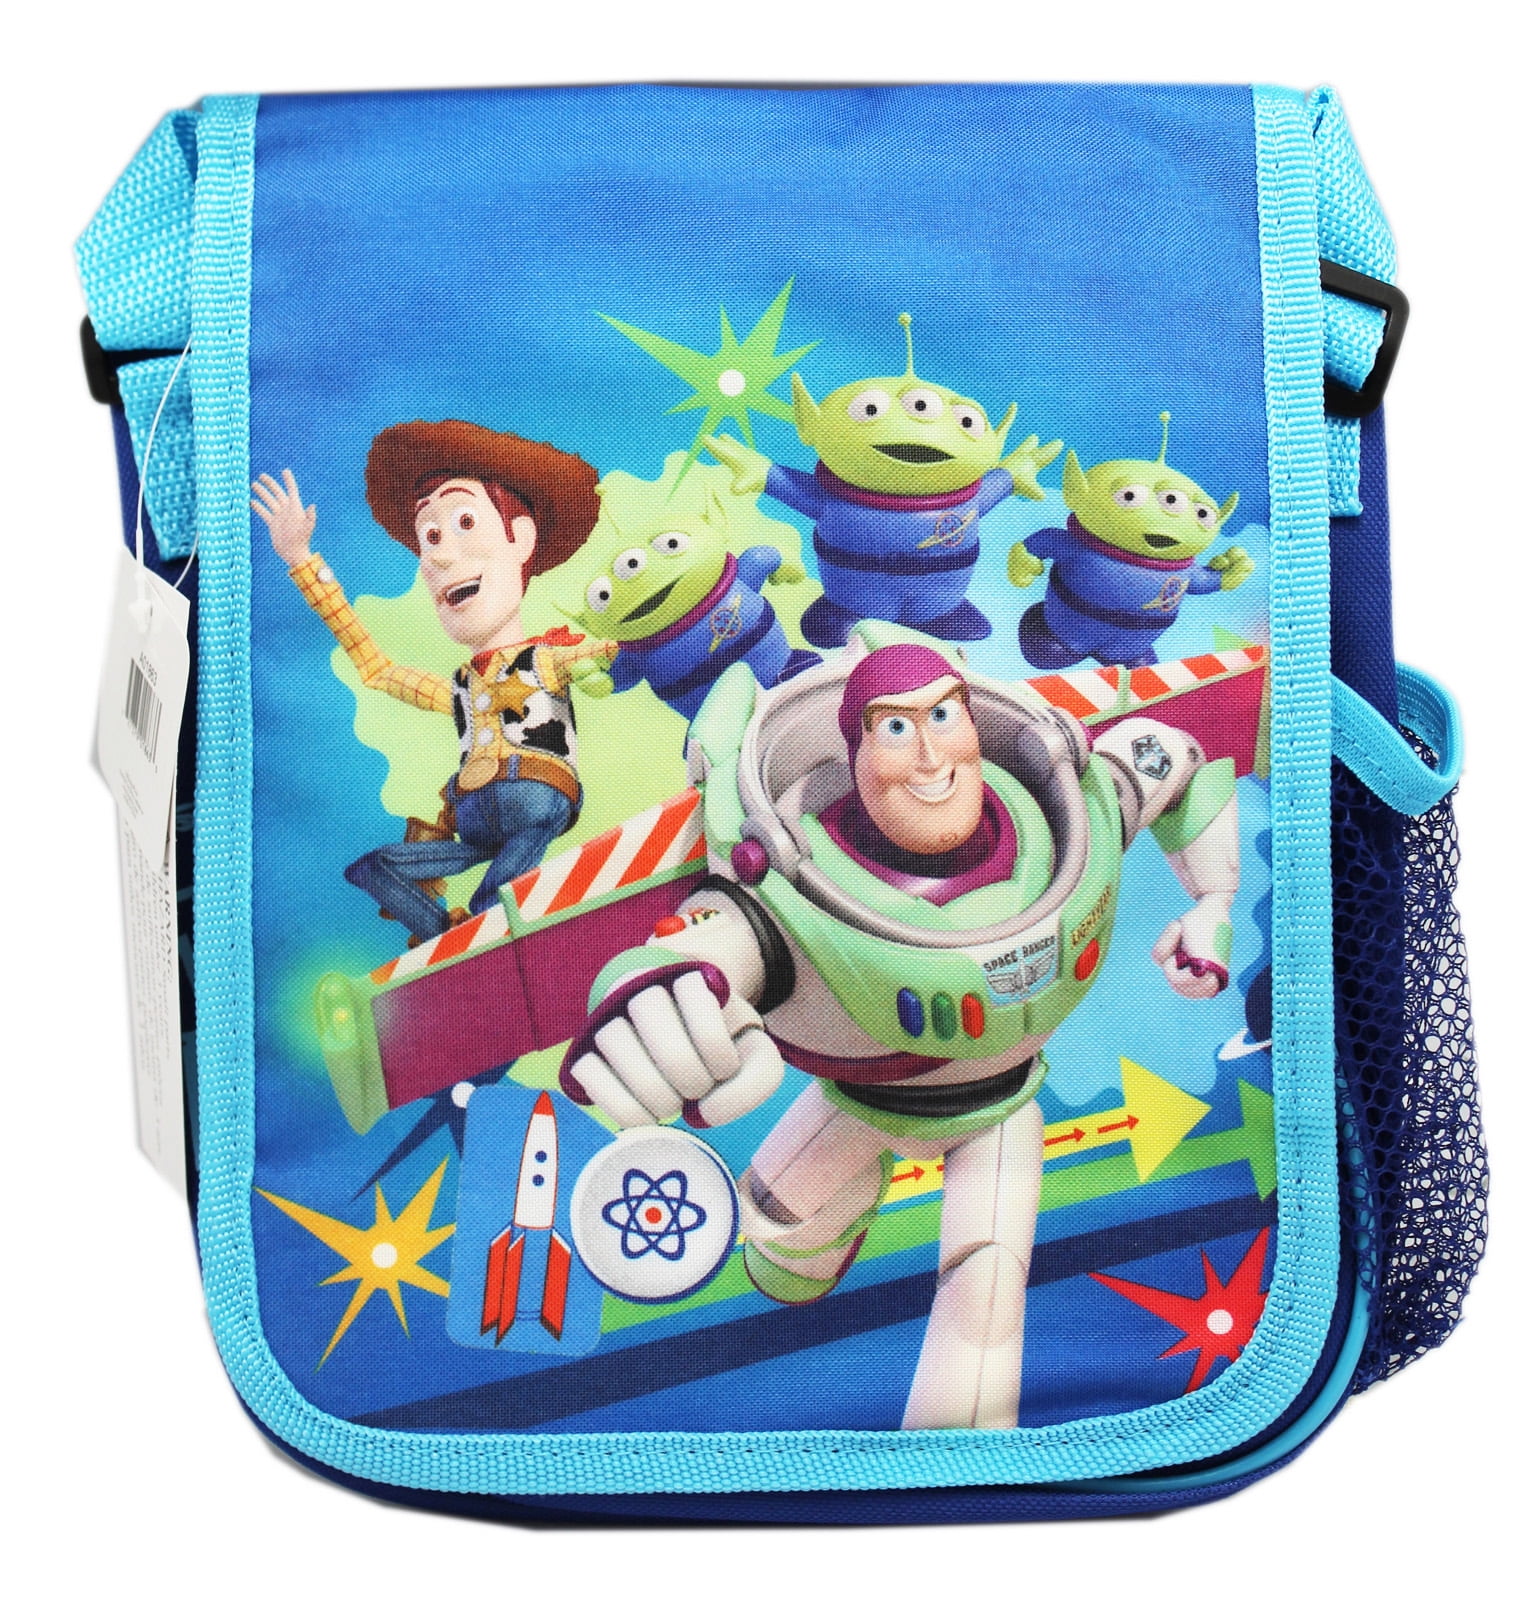 Toy Story Handtasche Mittagessen Taschen Lunchbox Tasche p30 w0051 